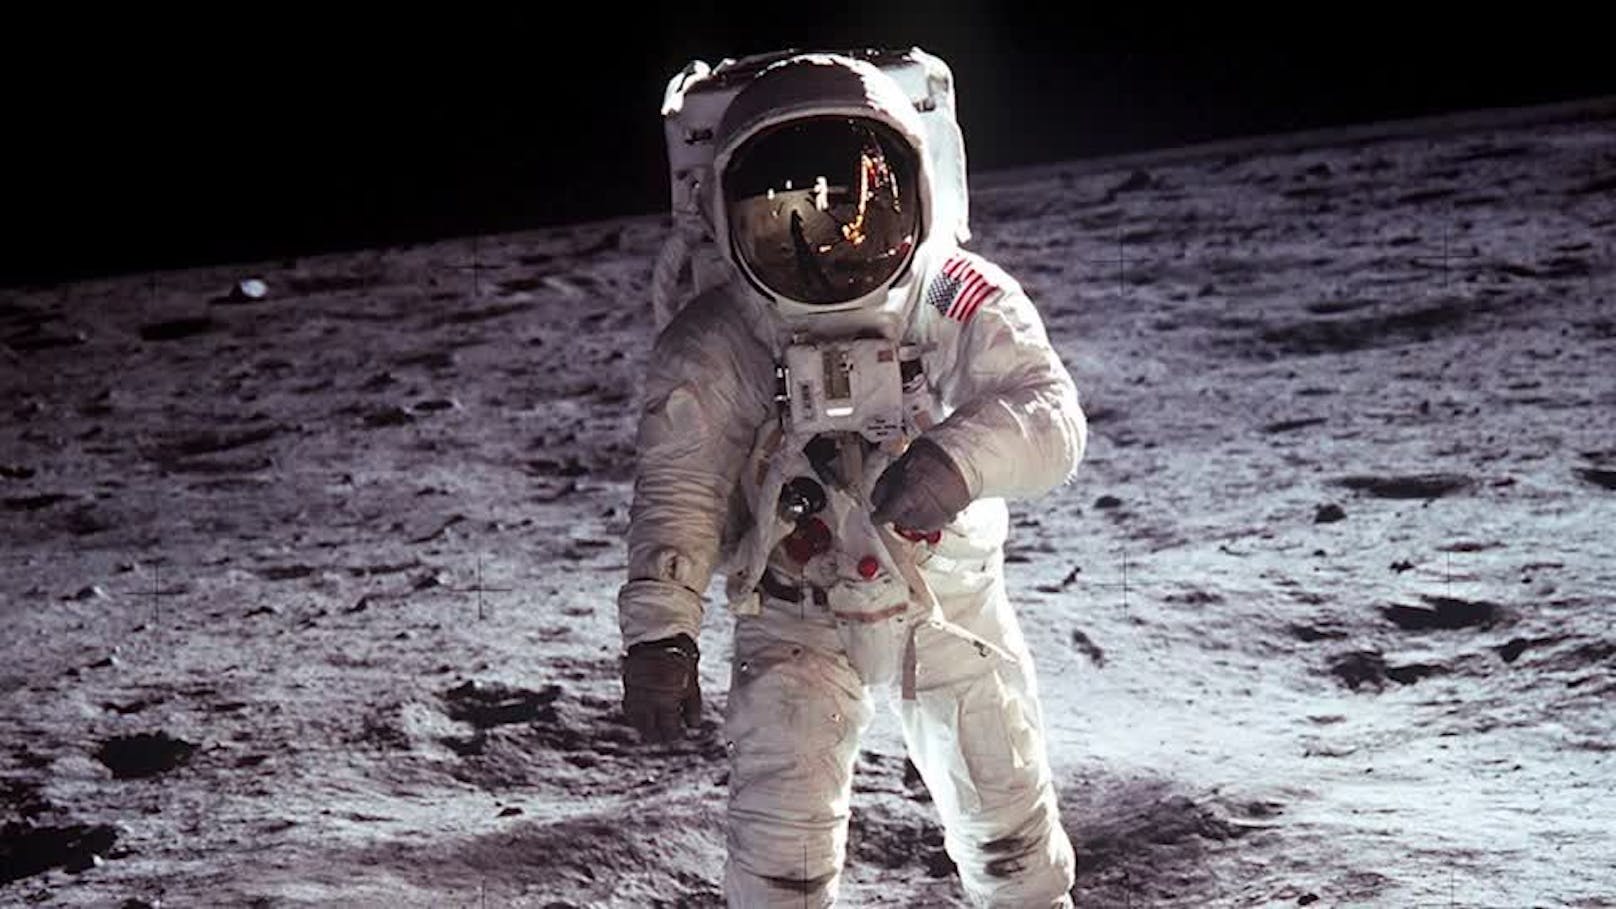 Erste auf dem Mond aufgenommene Fotos versteigert